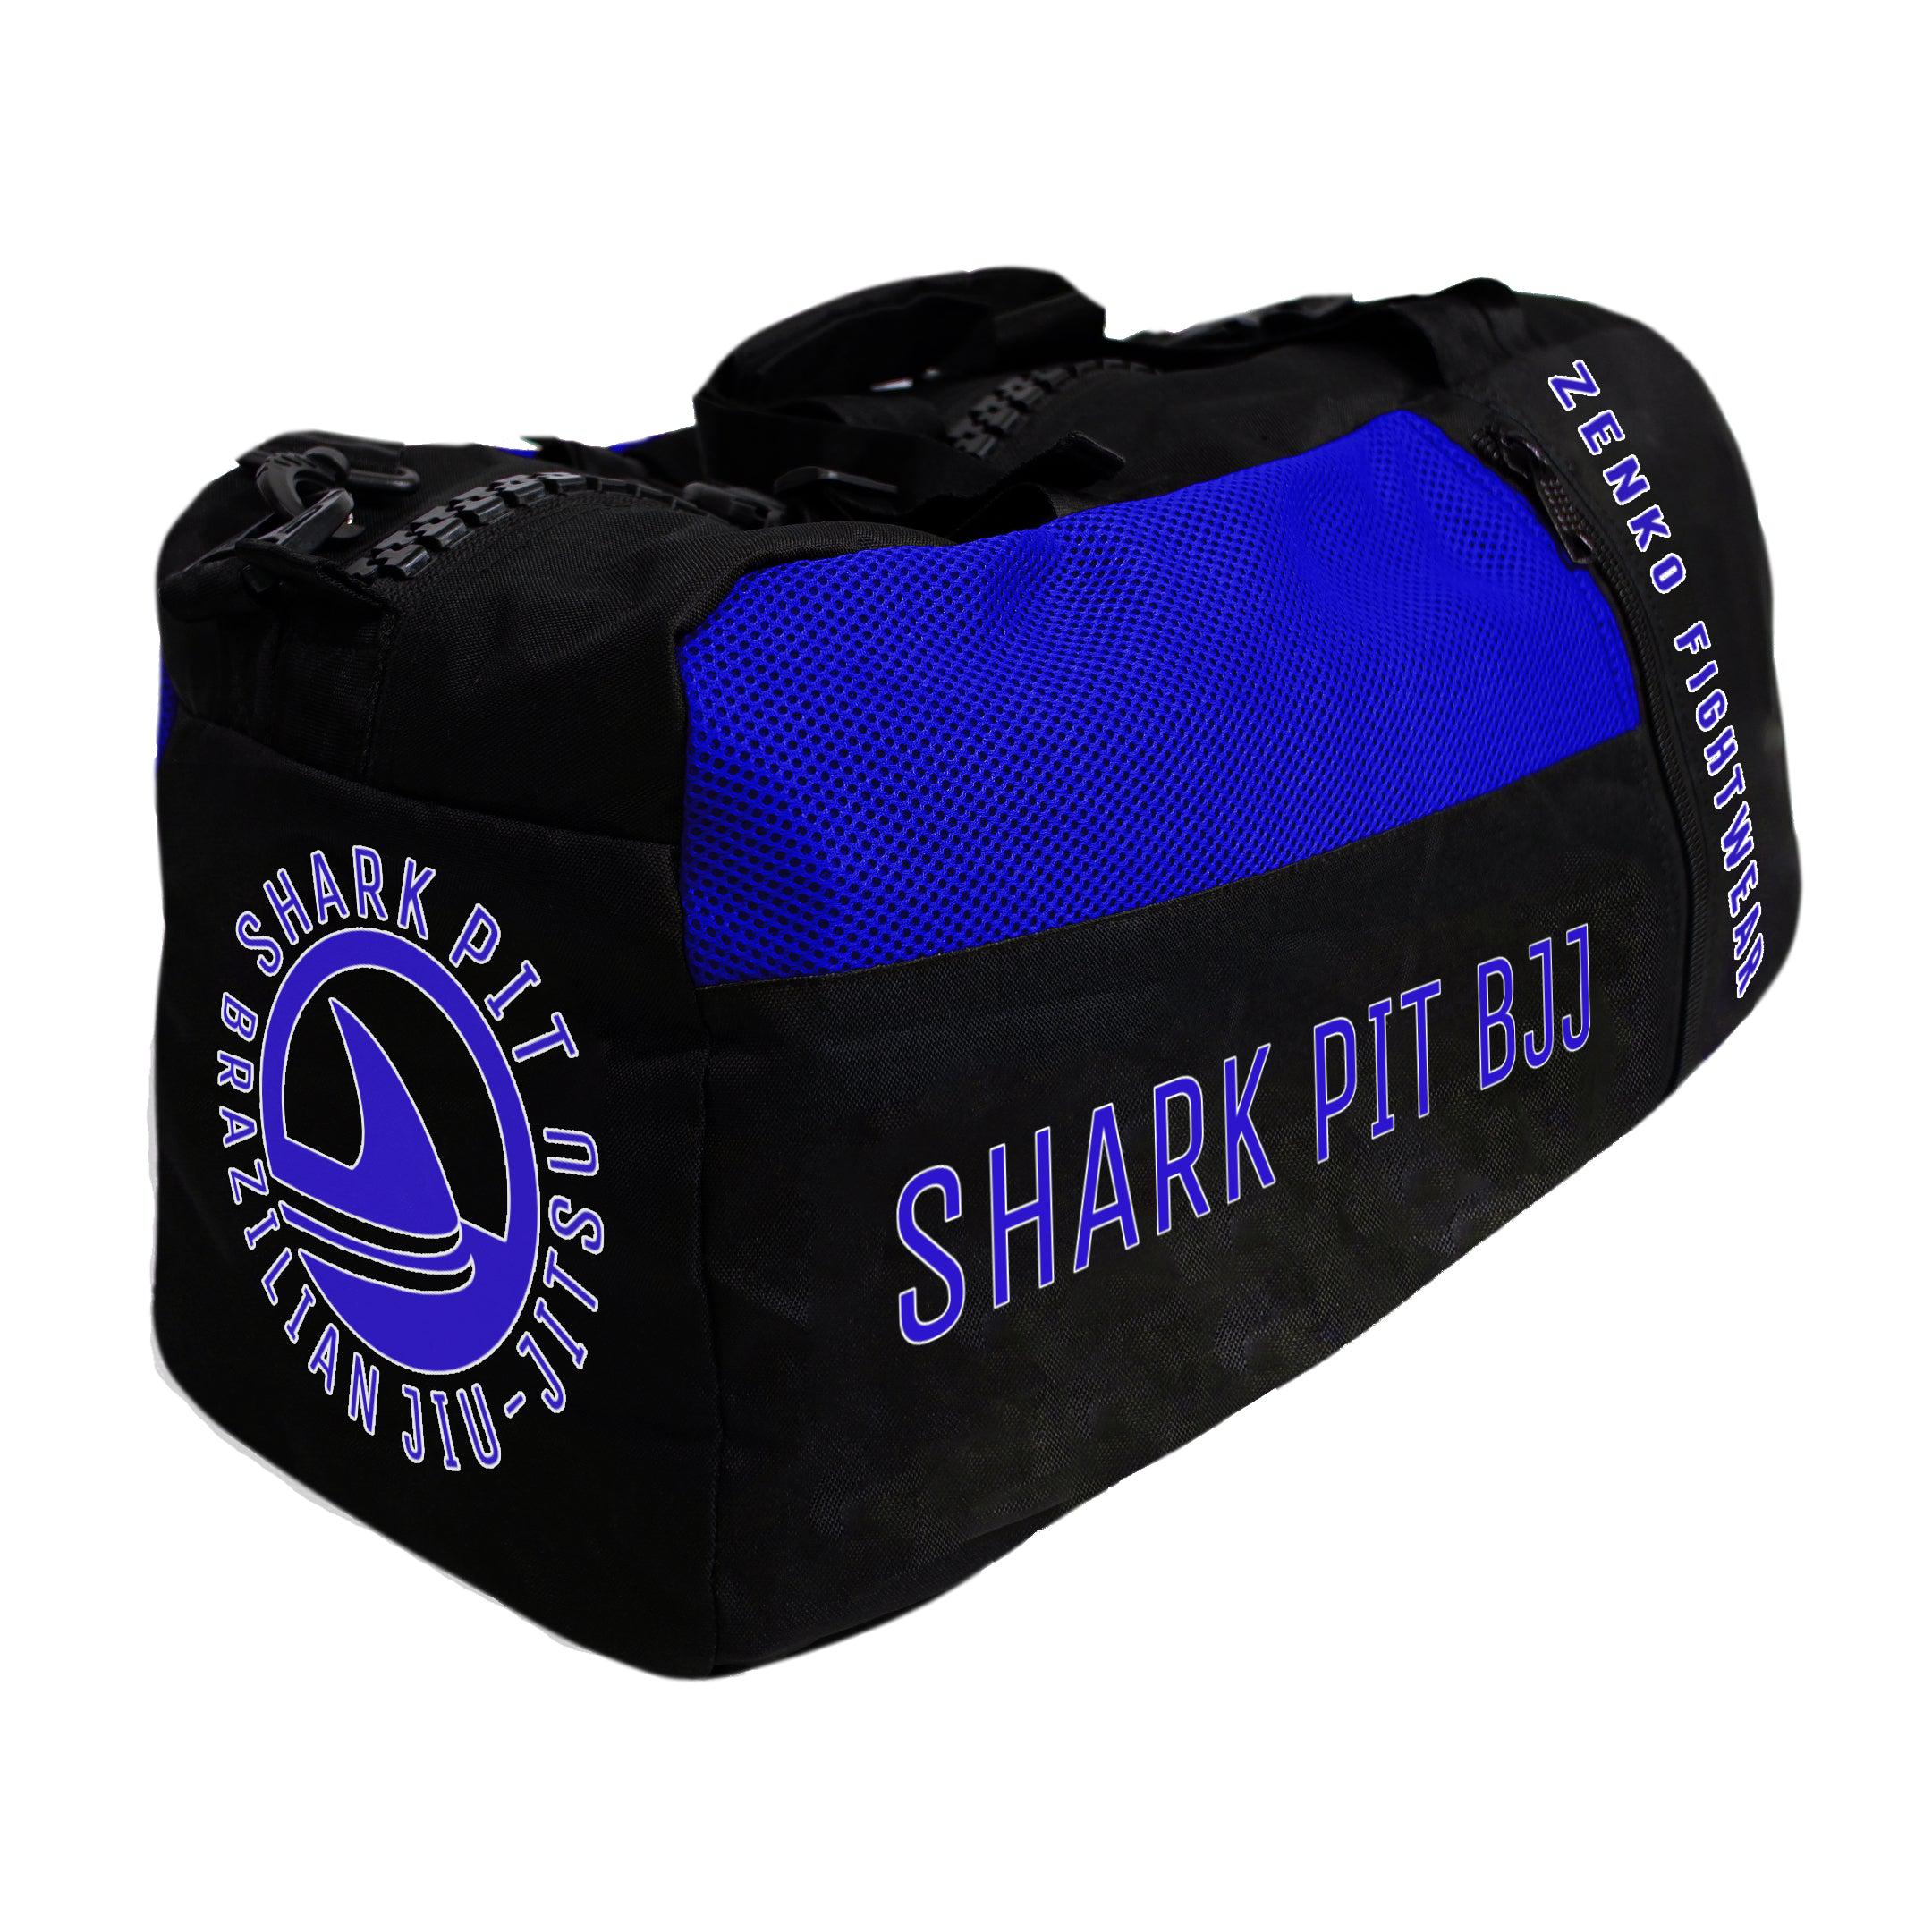 Shark Pit BJJ Gear Bag - Zenko Fightwear